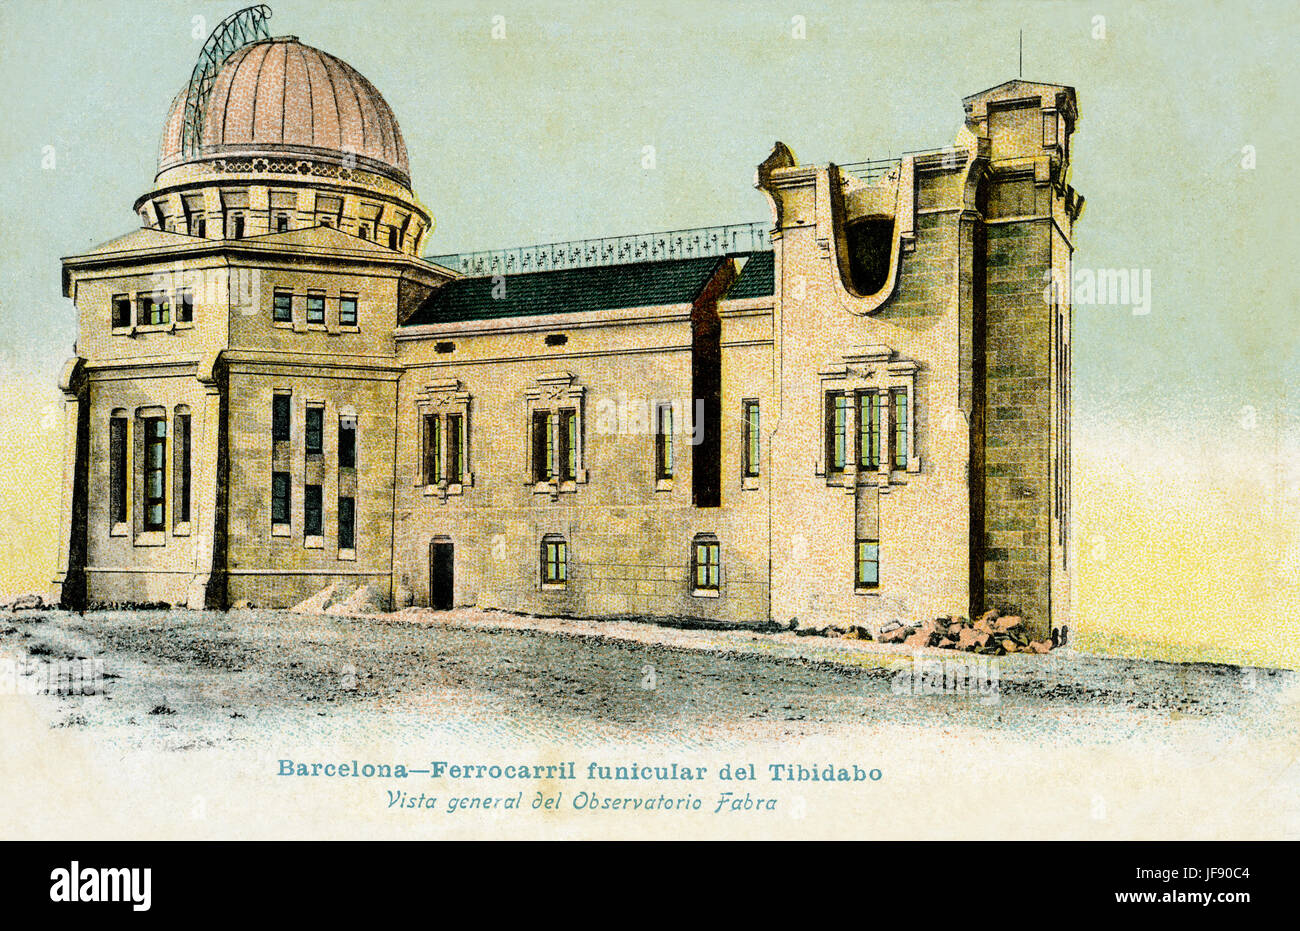 L'observatoire astronomique situé à l'Observatoire Fabra à Barcelone, Catalogne, Espagne vers le sud à 415 mètres au-dessus du niveau de la mer. Elle a été créée en 1904 . Illustration de l'époque de sa création. L'activité principale est l'étude des astéroïdes et comètes. Peut être atteint par finicular Ferrocaril del Tibidabo construit en 1901 Banque D'Images